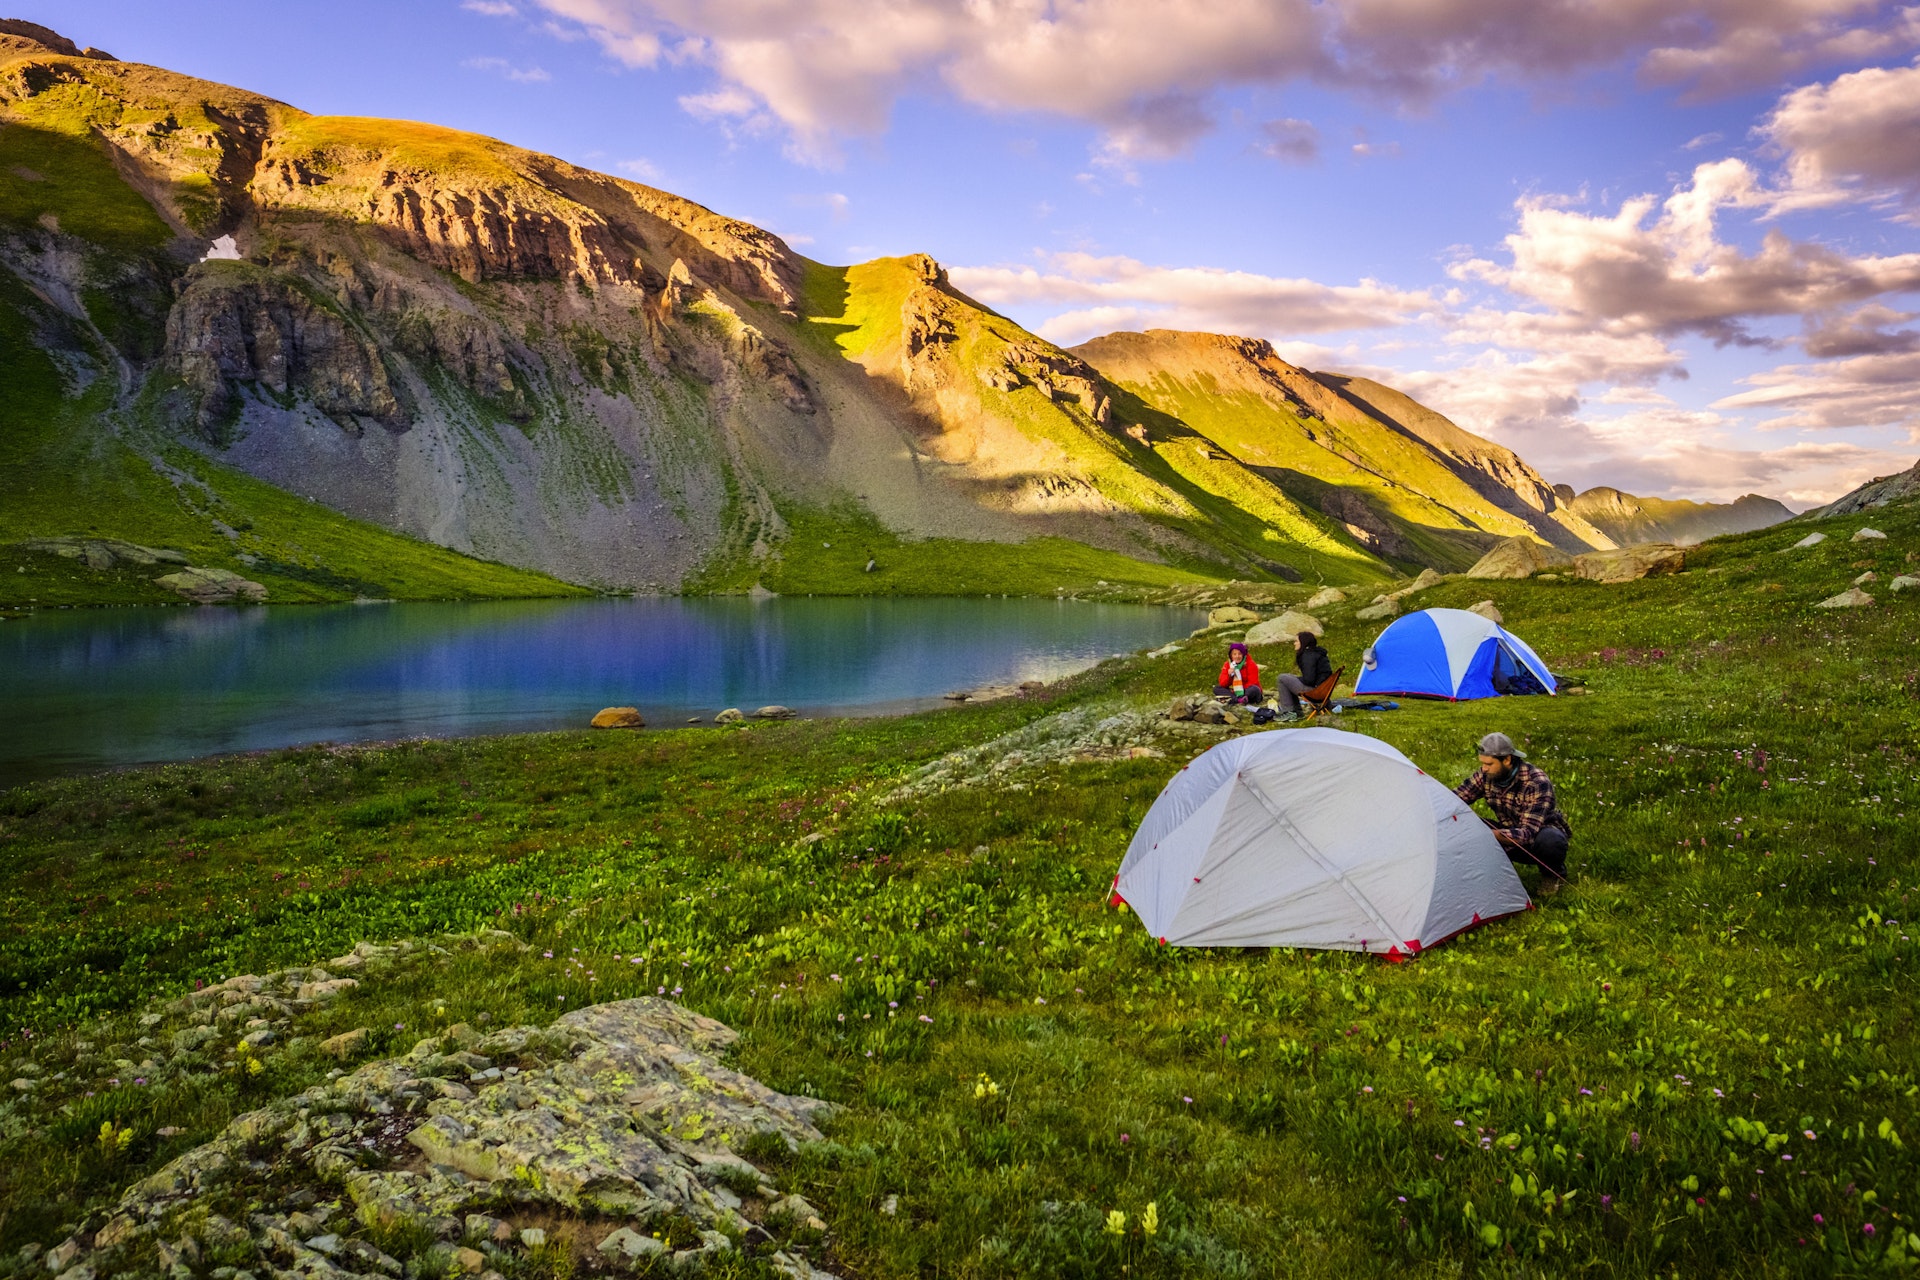  En begynderguide til backcountry-camping: Start ikke din rejse, før du har læst den her